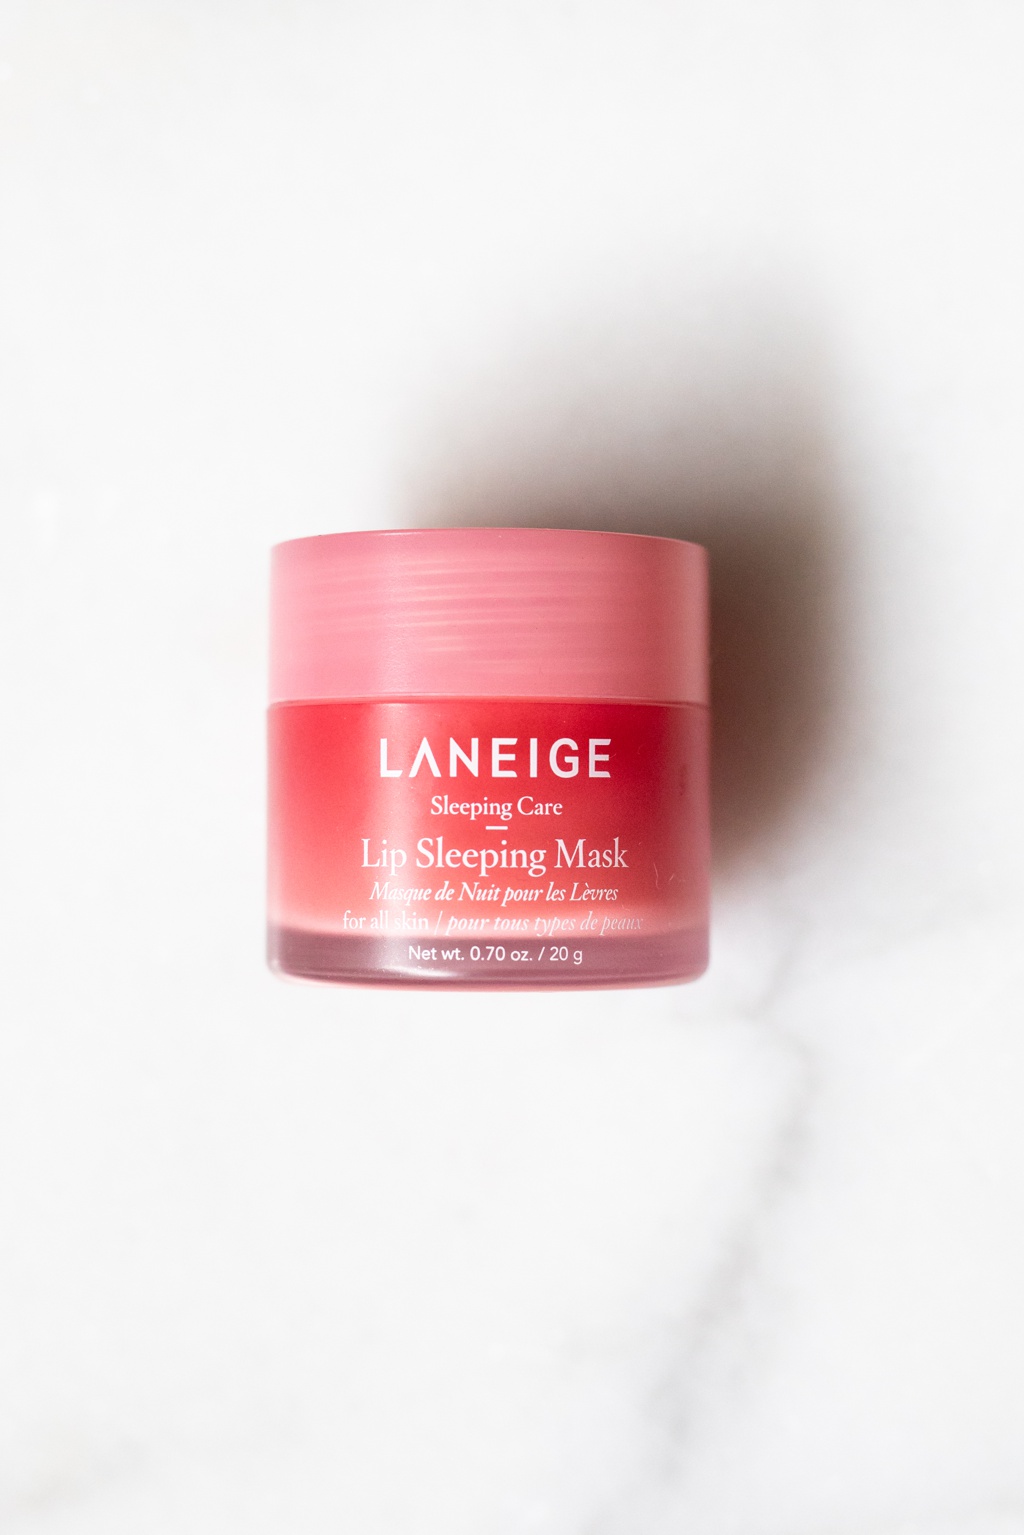 Laneige Lip Sleeping Mask | Fancy Face Blog